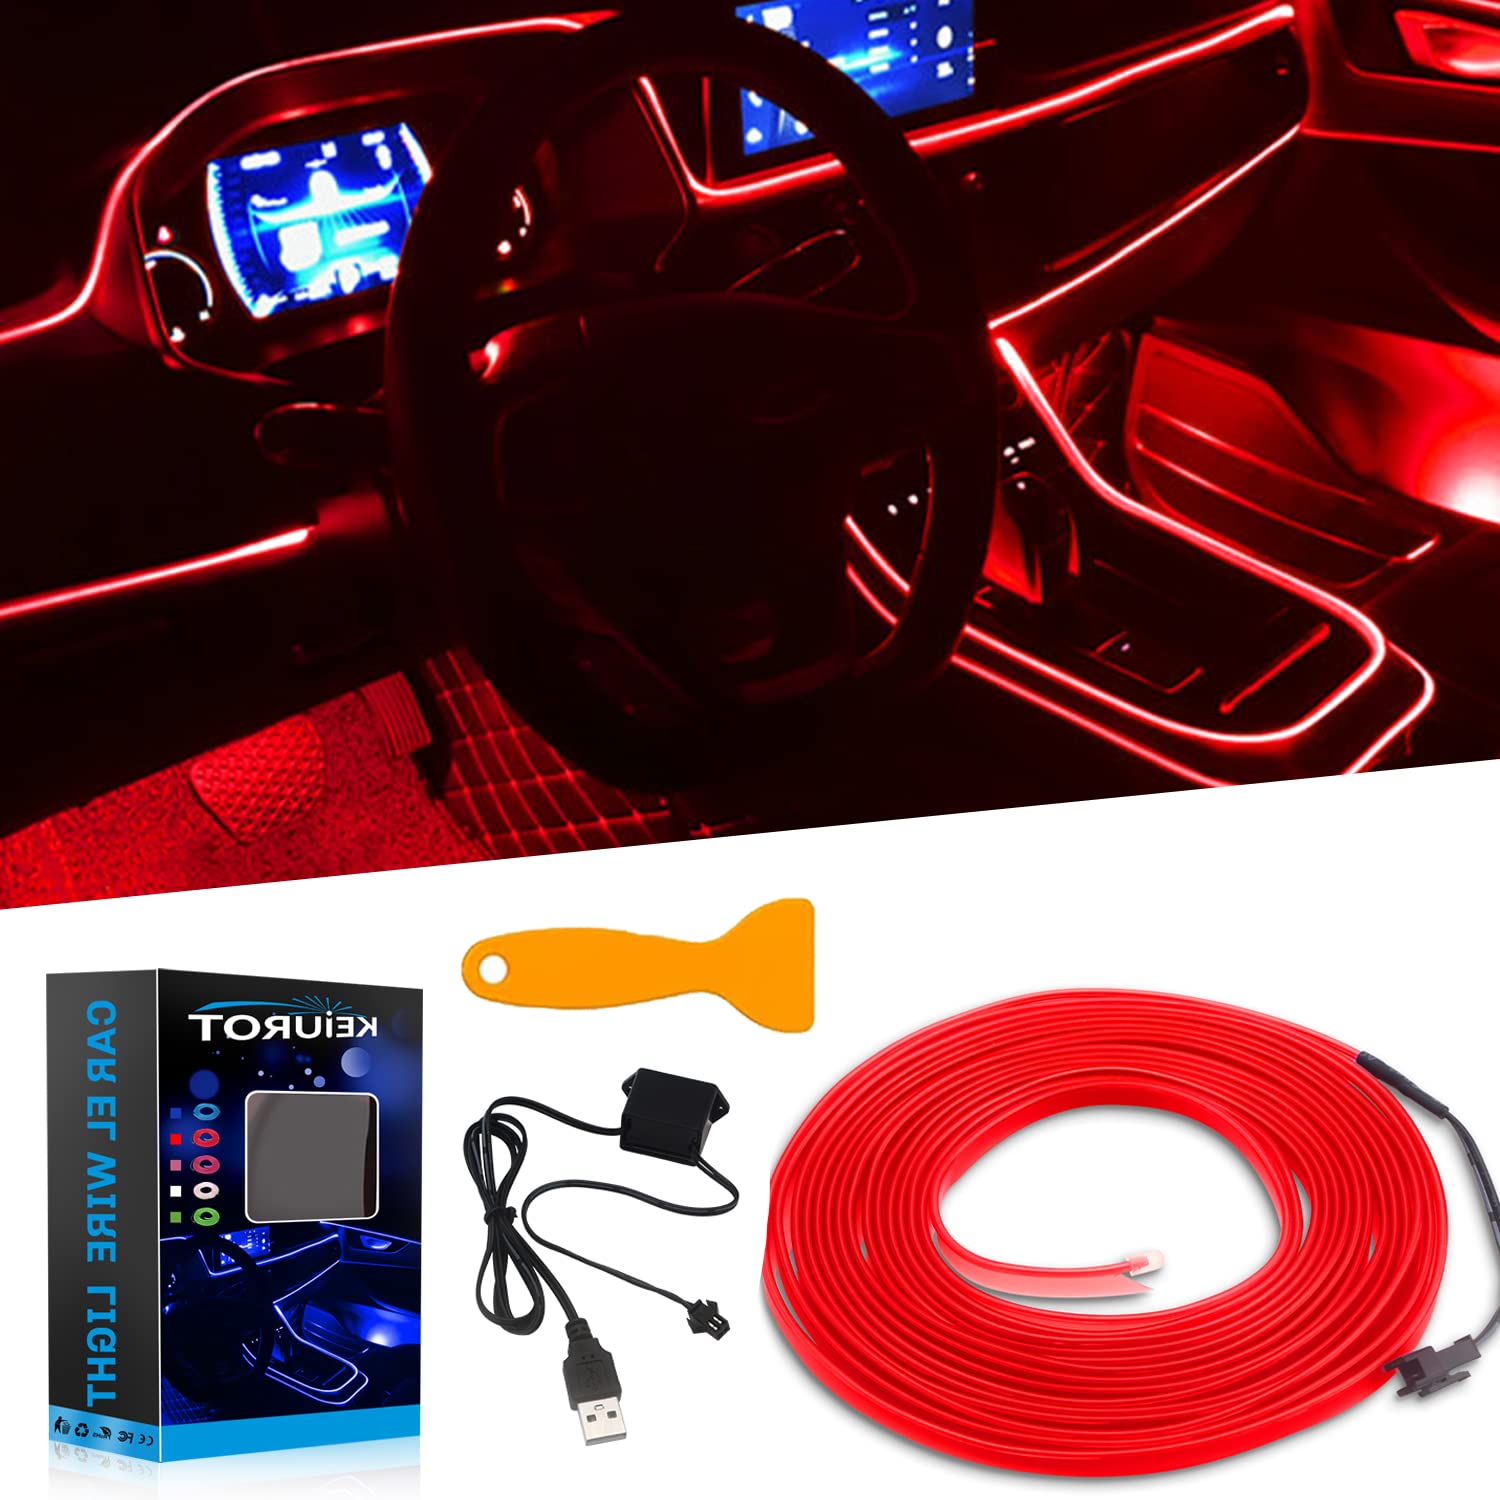 Keiurot EL Wire Auto-Lichter USB Neonlicht für Auto, Rot, 5 m, Ambientebeleuchtung, Atmosphäre, Auto-LED-Innenstreifen, Lichtleiste, Nähkanten, Dekoration, Autoverkleidung, LED-Beleuchtung von Keiurot